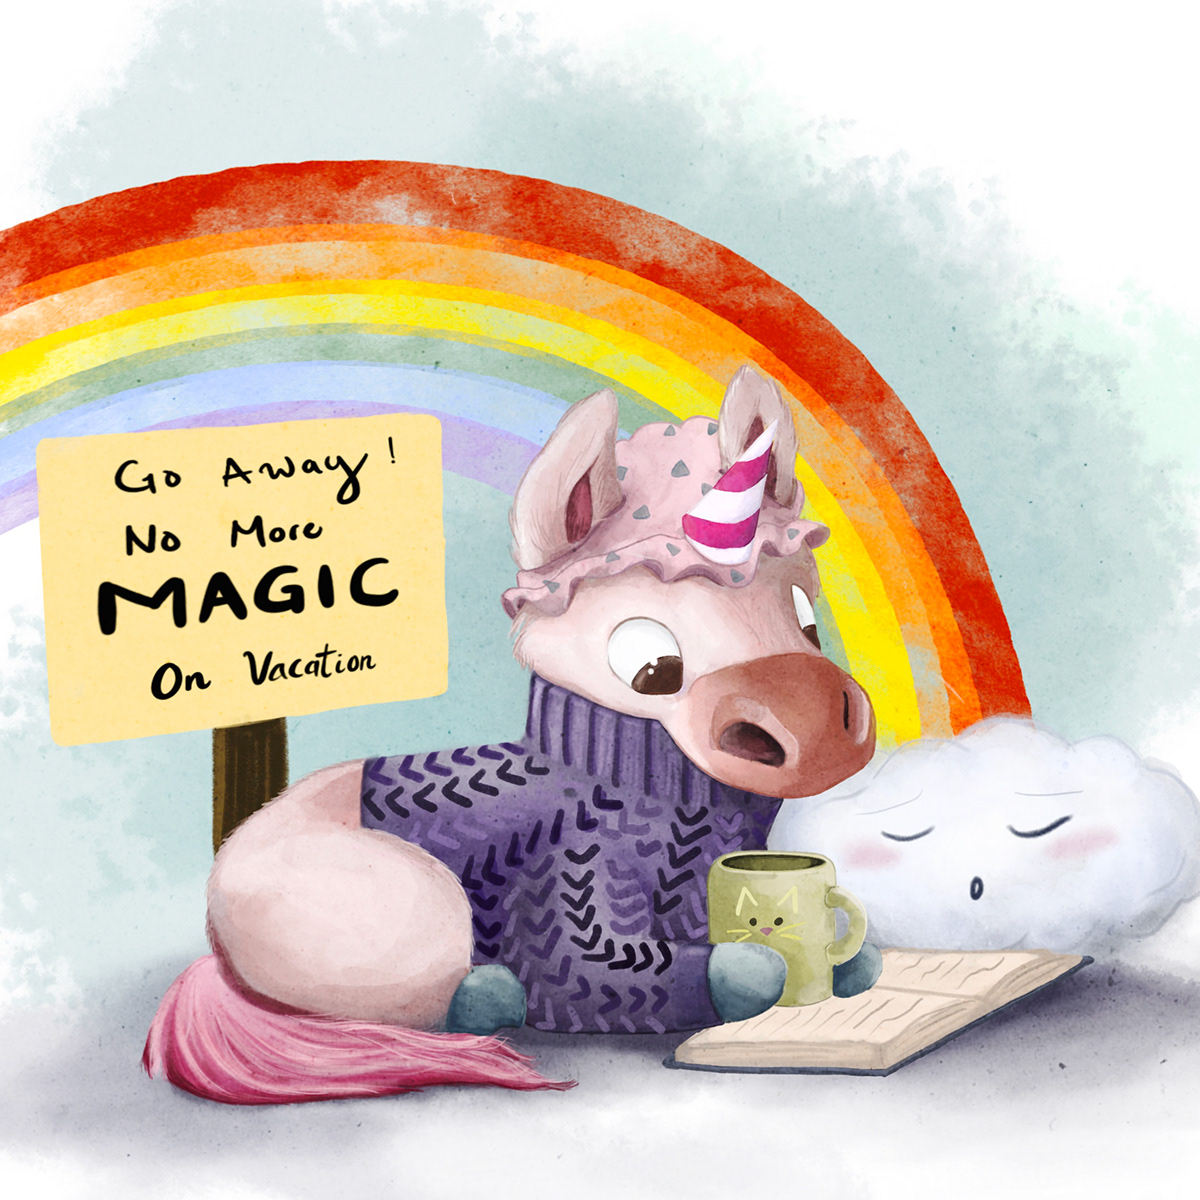 animalcharacterdesign characterdesign childrensbookillustration ILLUSTRATION  unicorn